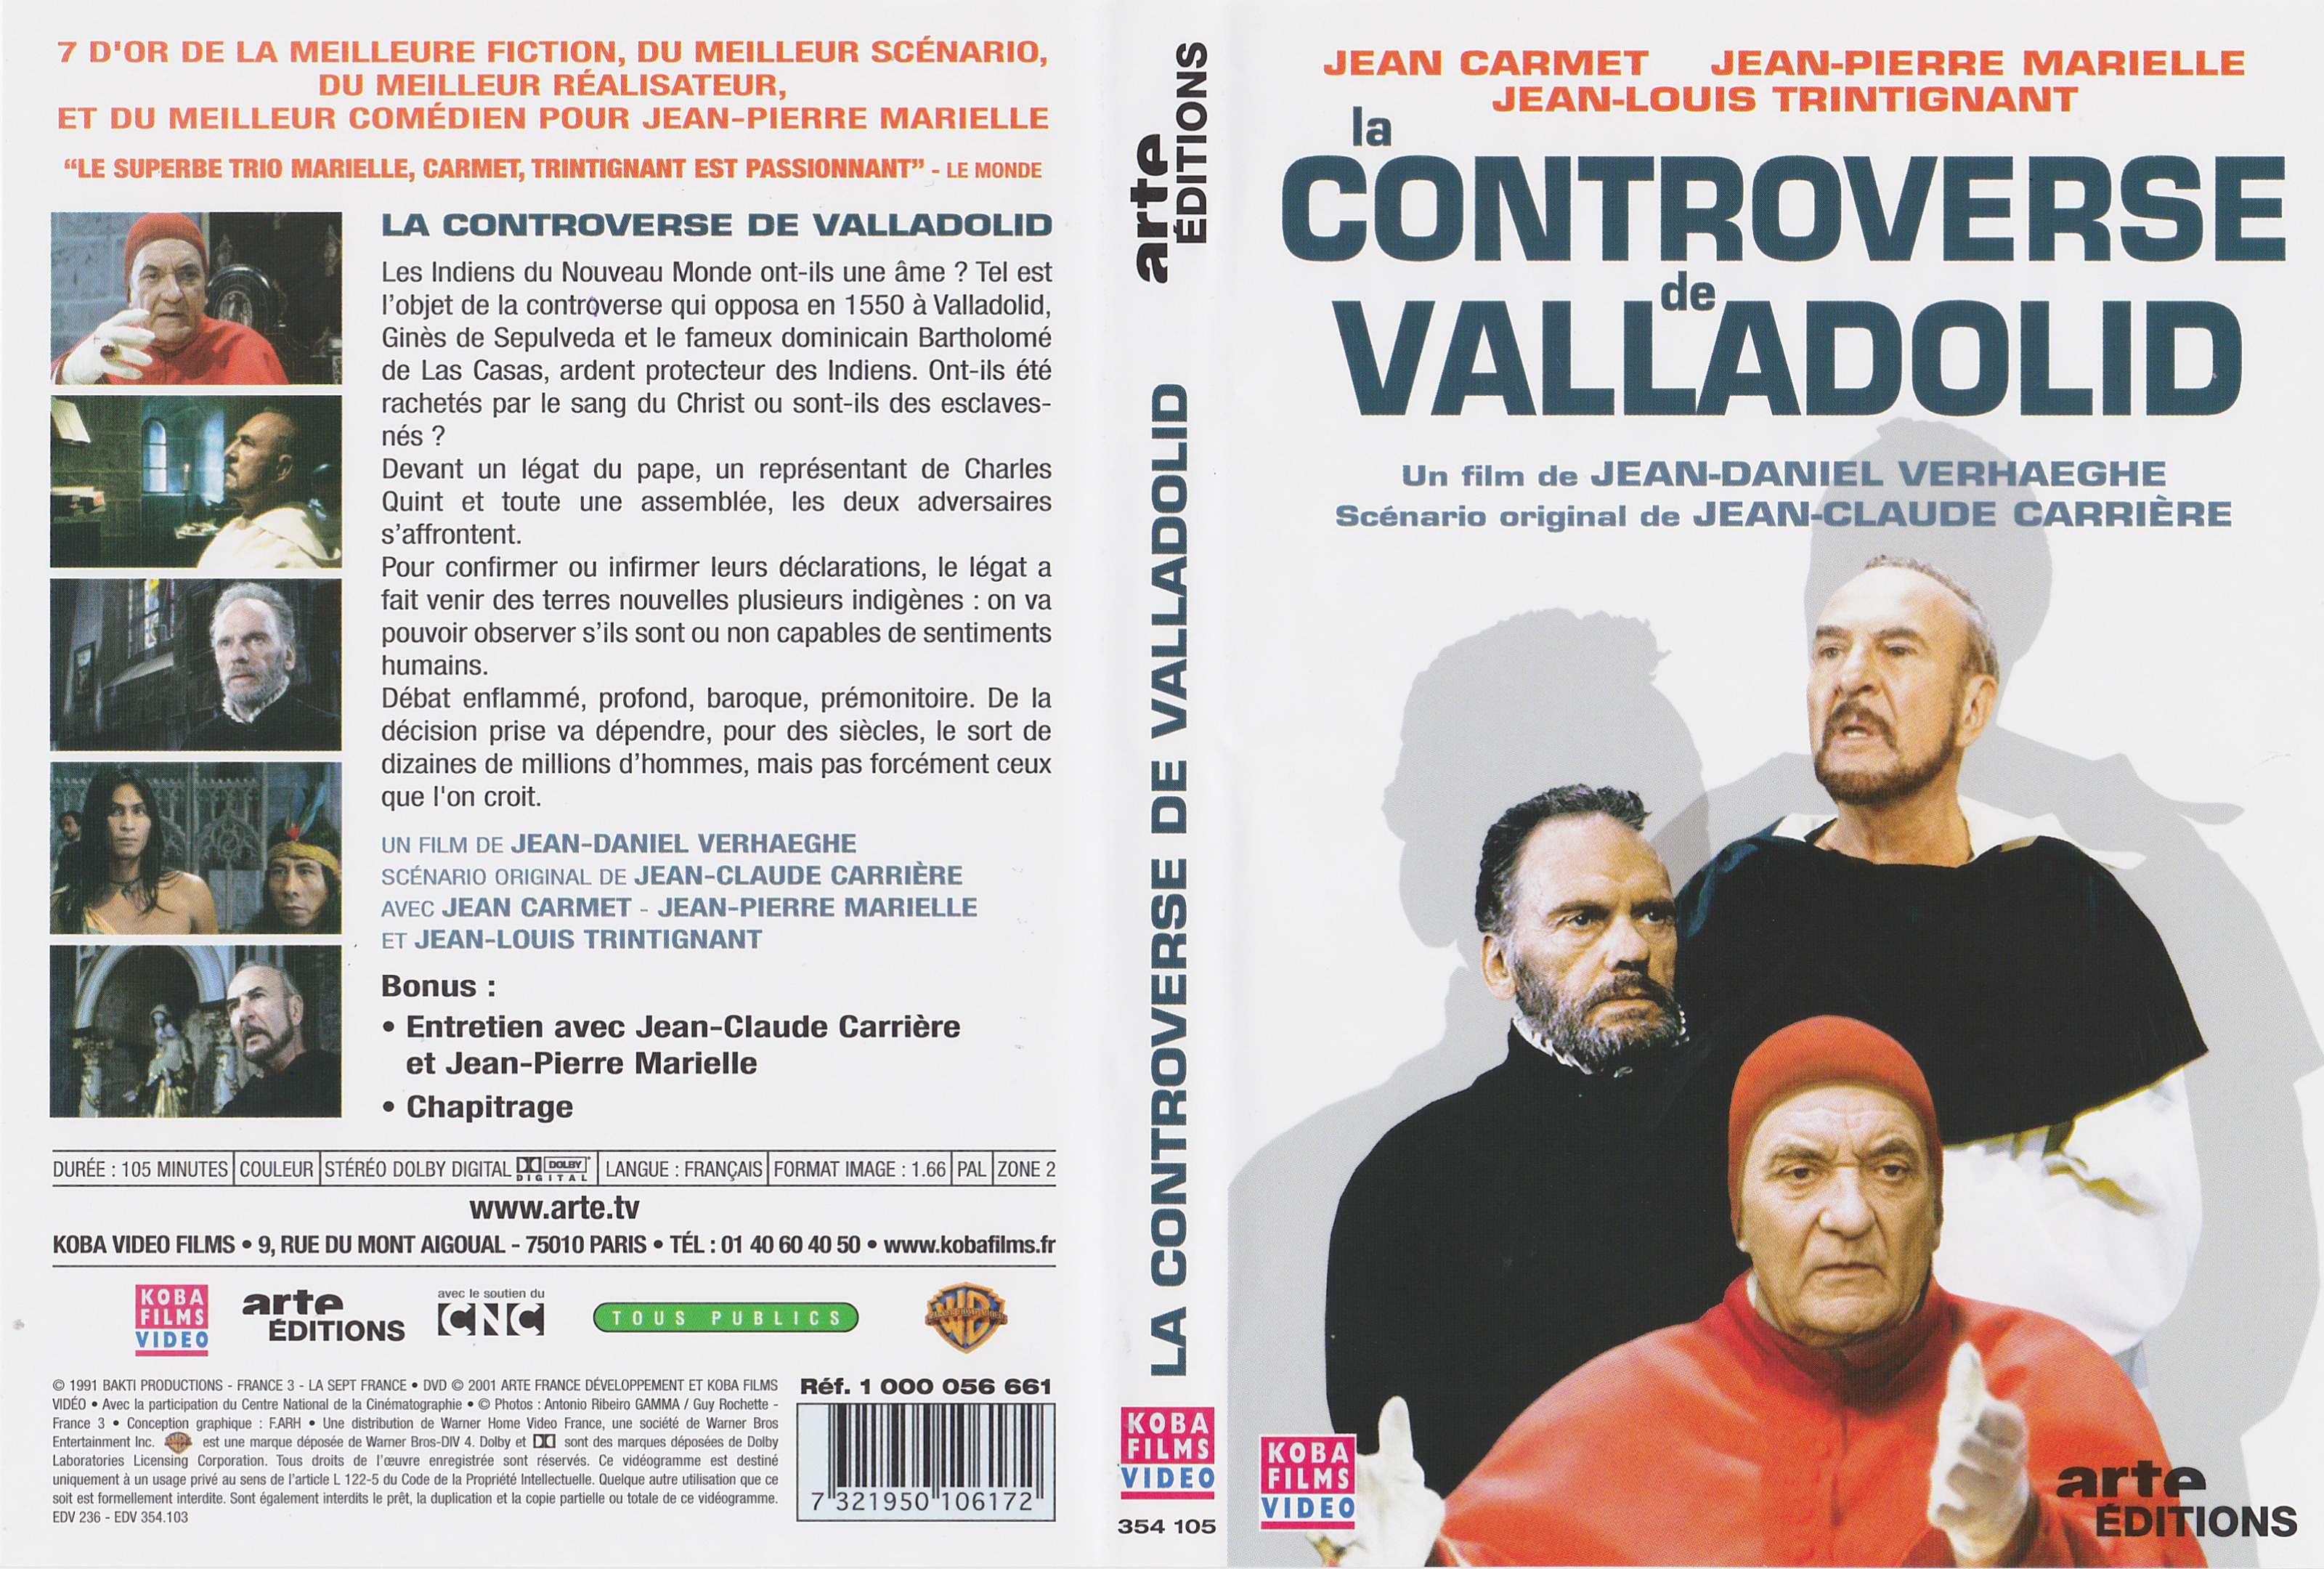 Jaquette DVD La controverse de Valladolid v3